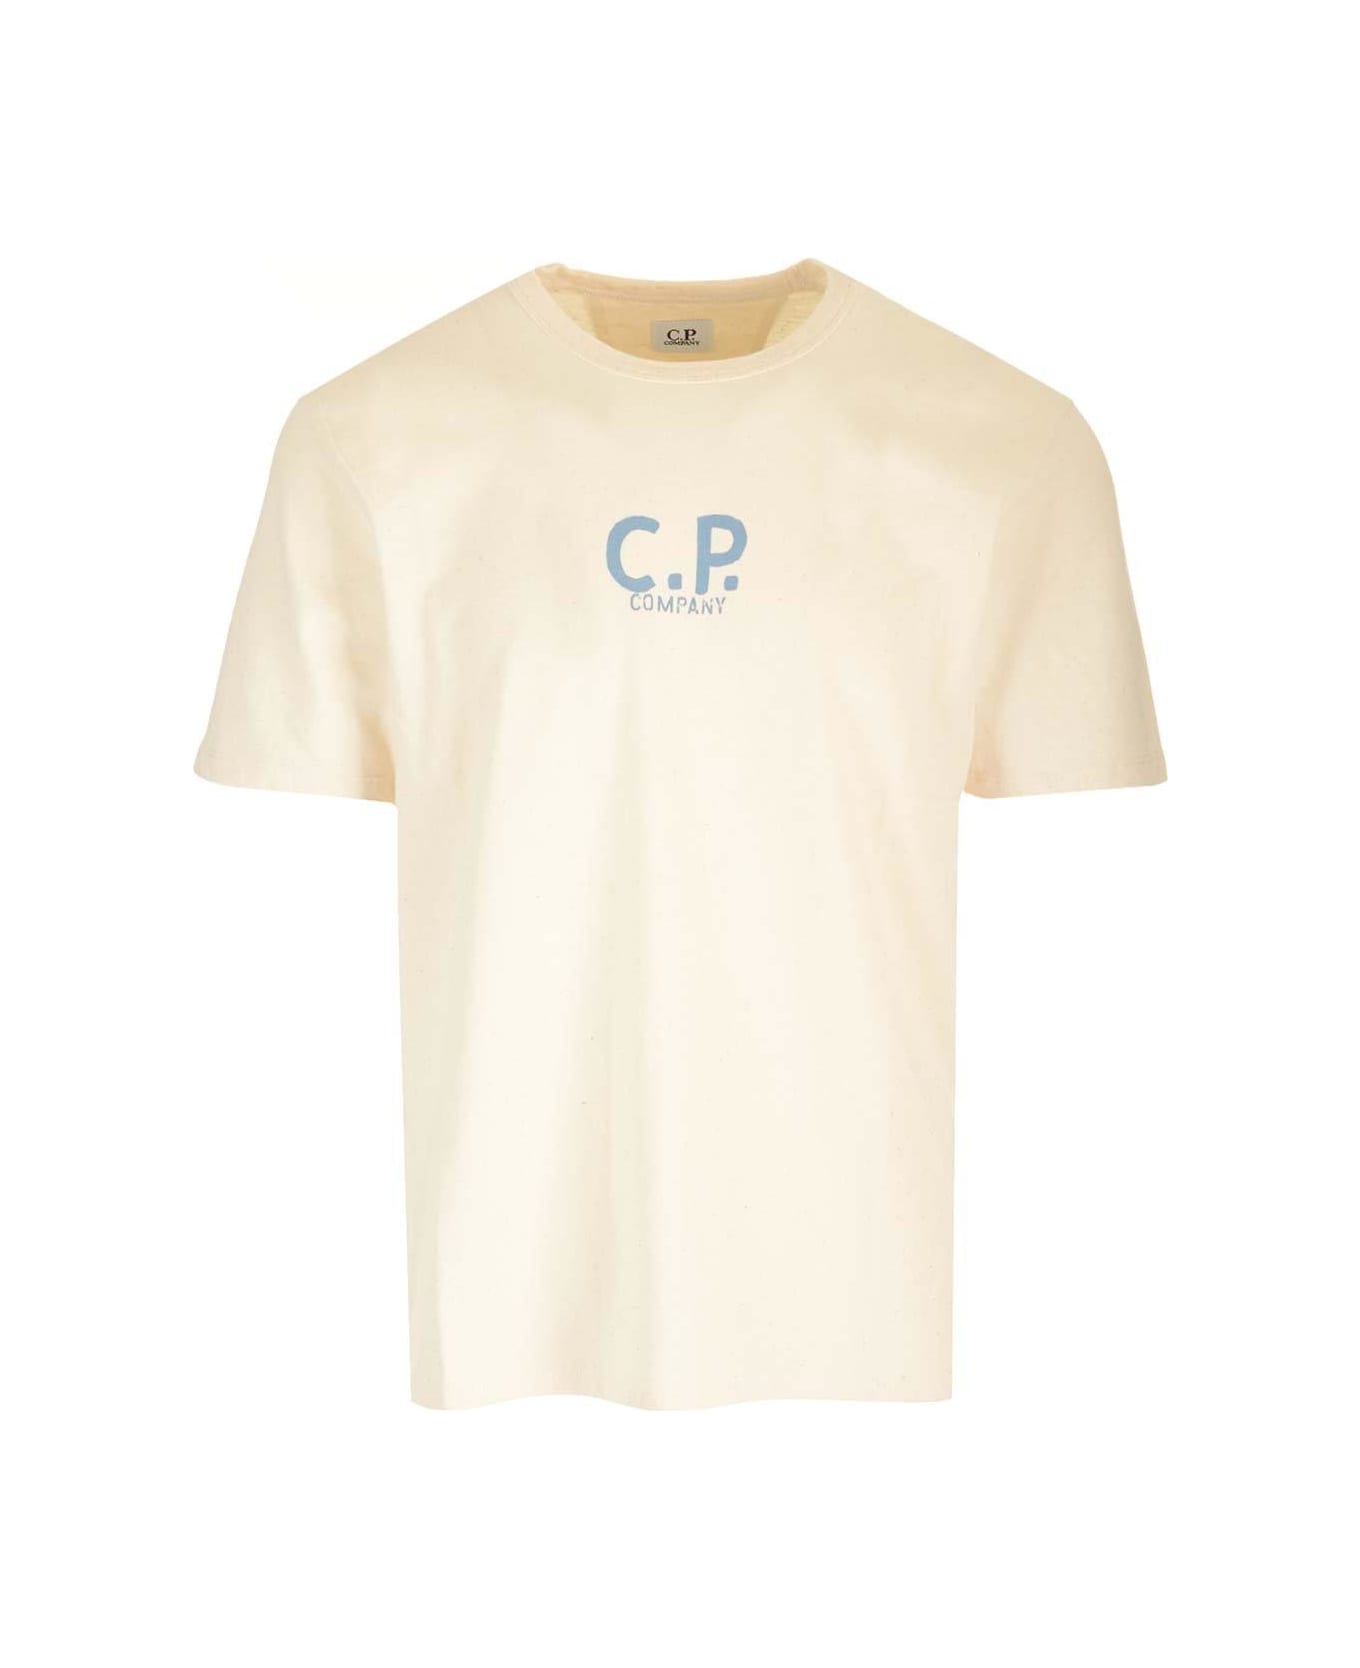 C.P. Company Logo Printed Crewneck T-shirt - NEUTRALS